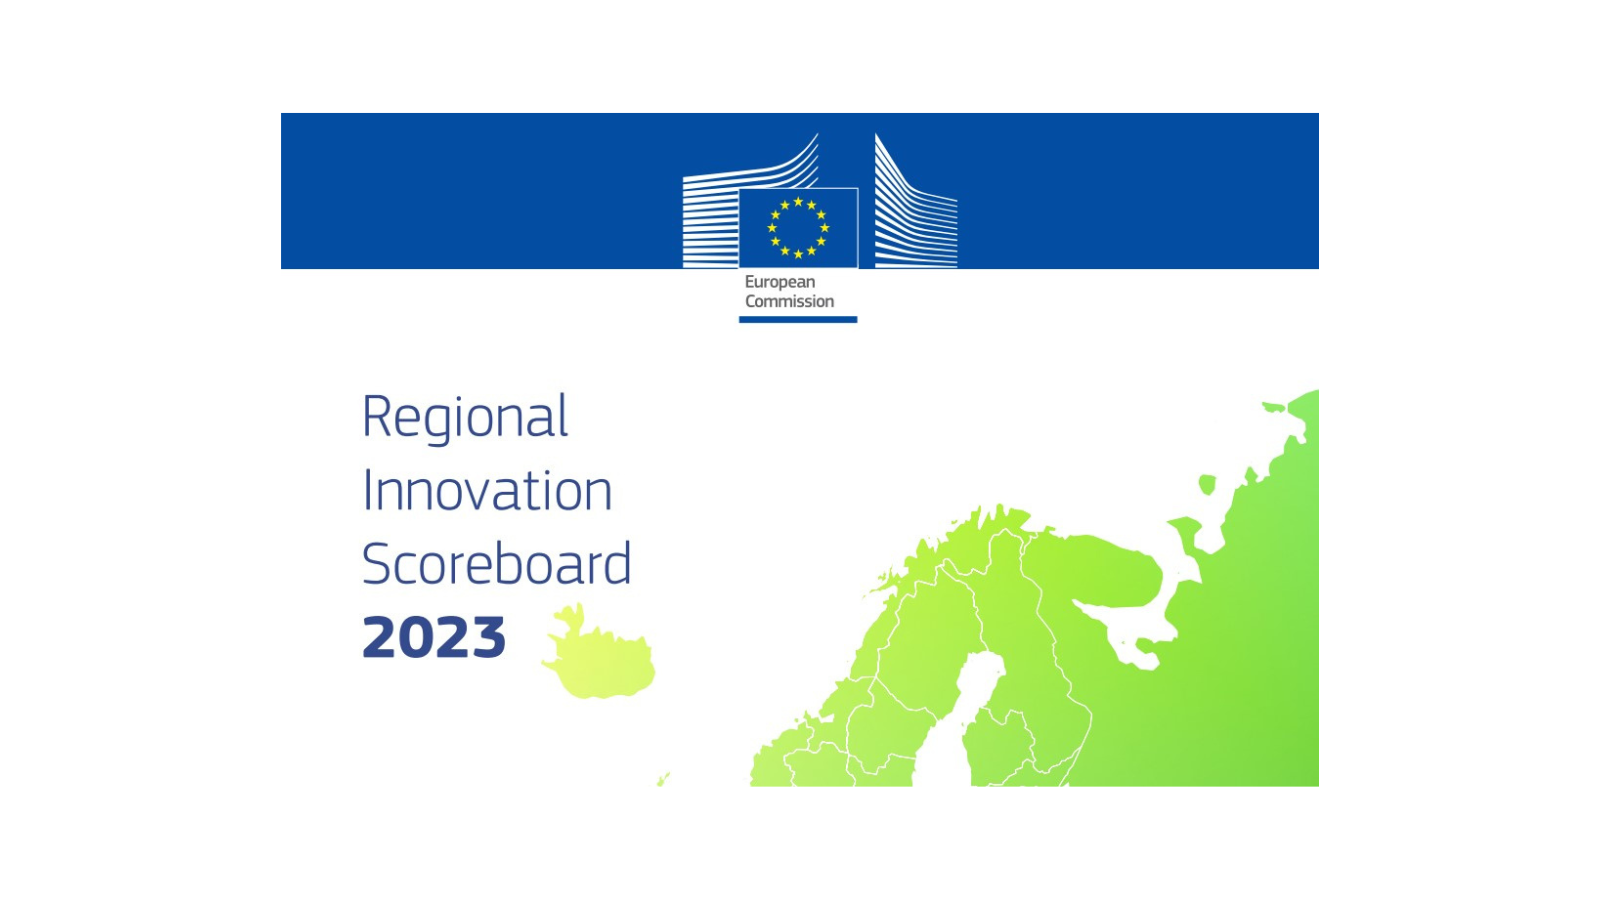 Regional Innovation Scoreboard 2023 published